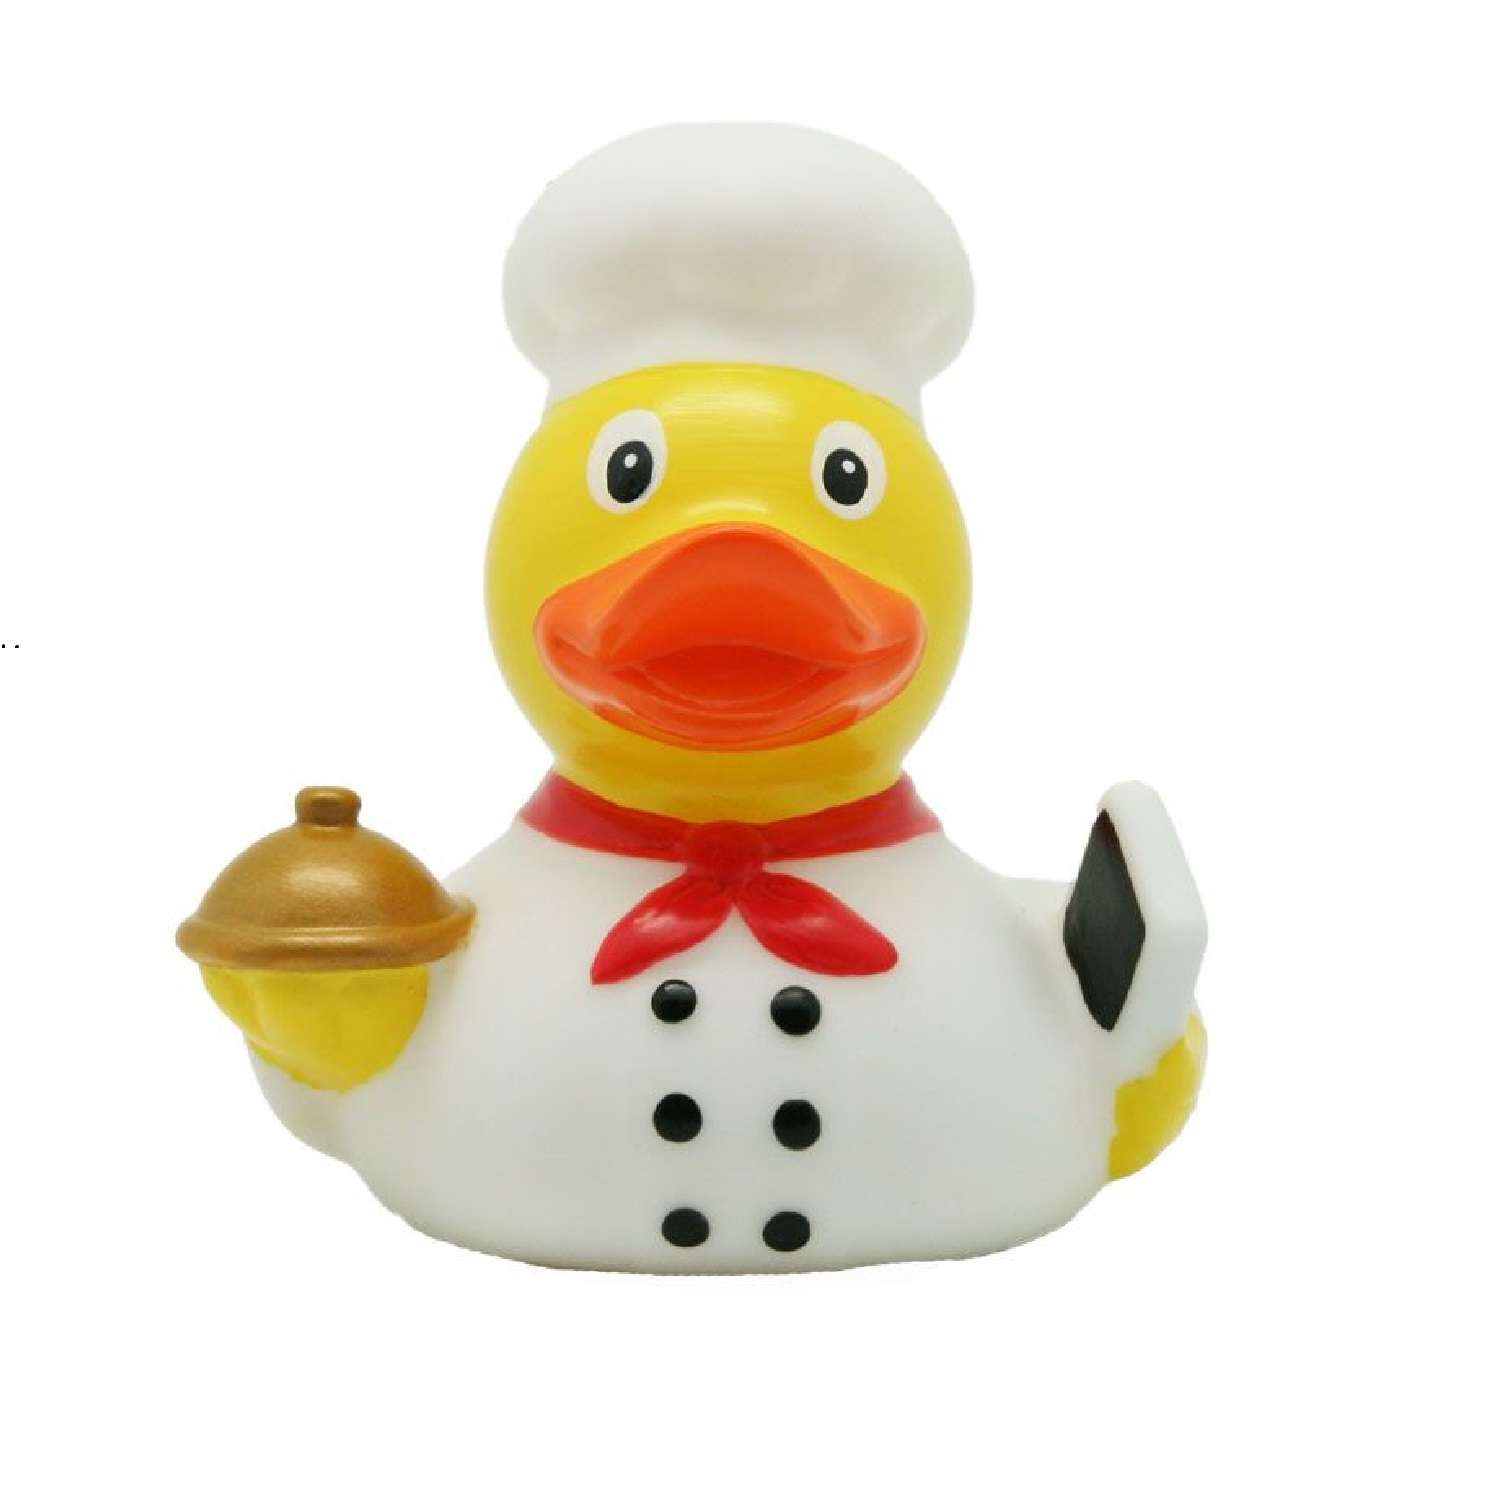 Игрушка Funny ducks для ванной Повар уточка 1898 - фото 1